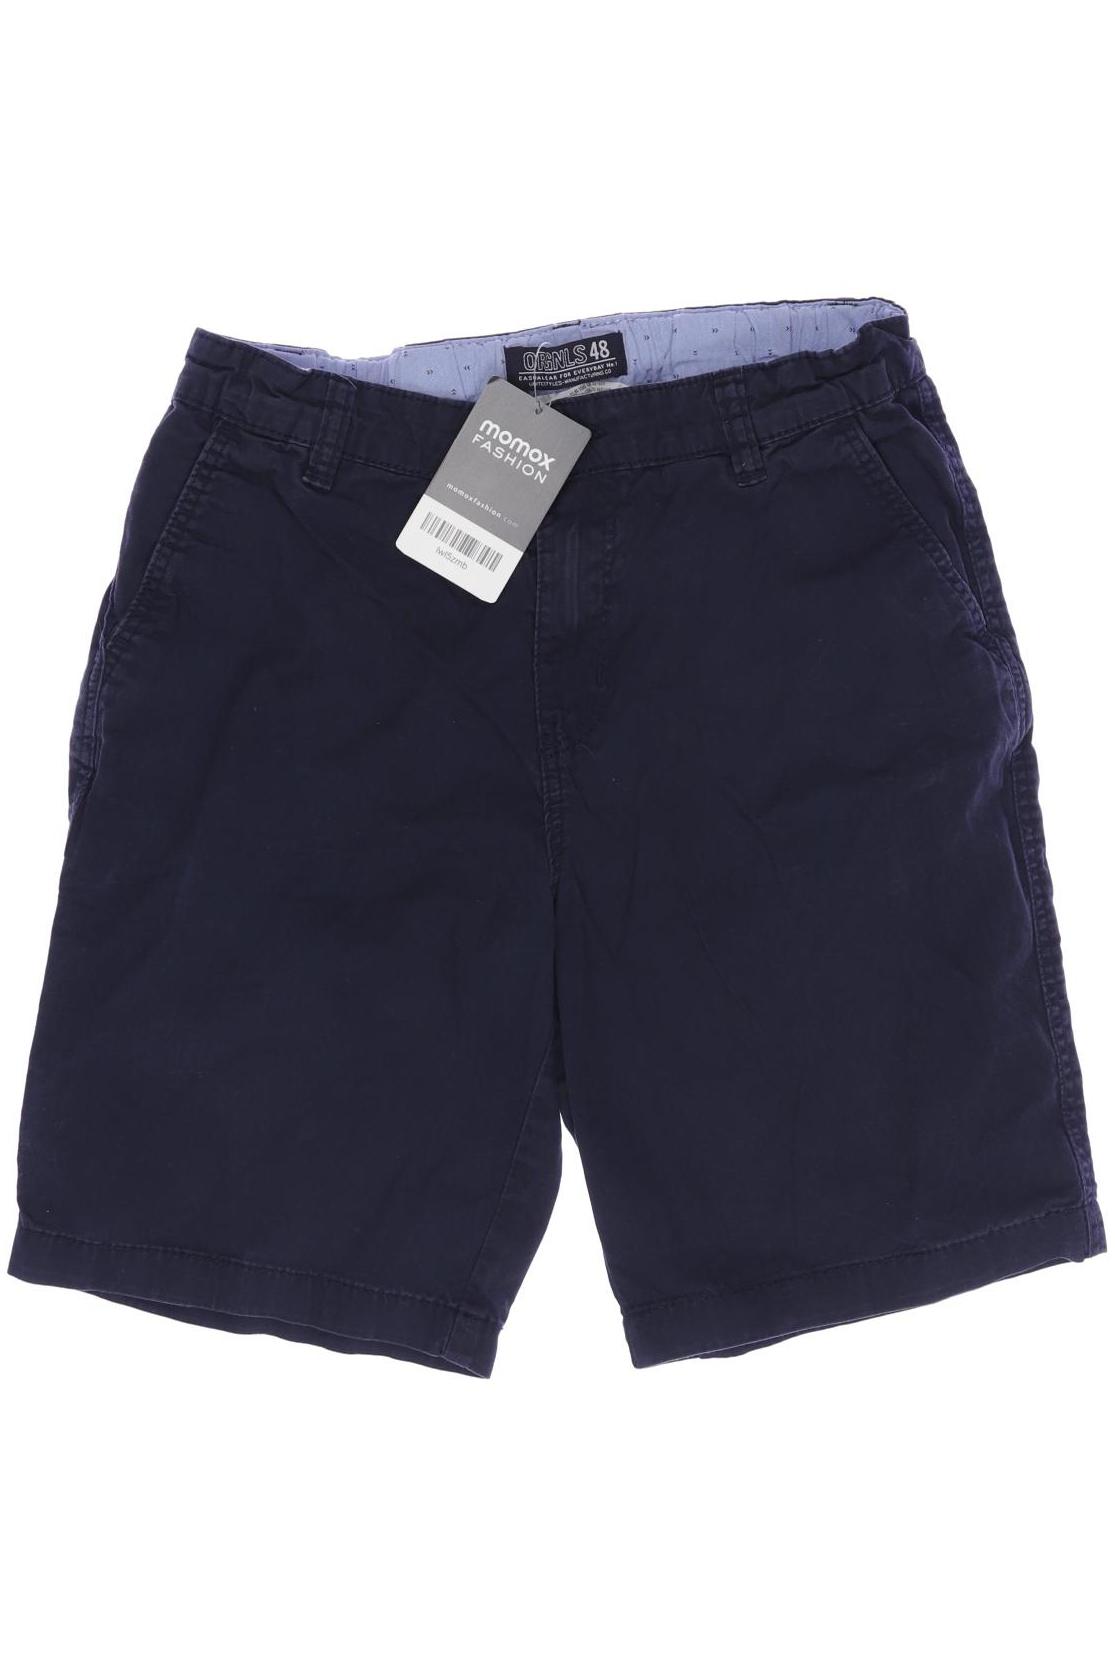 H&M Herren Shorts, marineblau, Gr. 158 von H&M